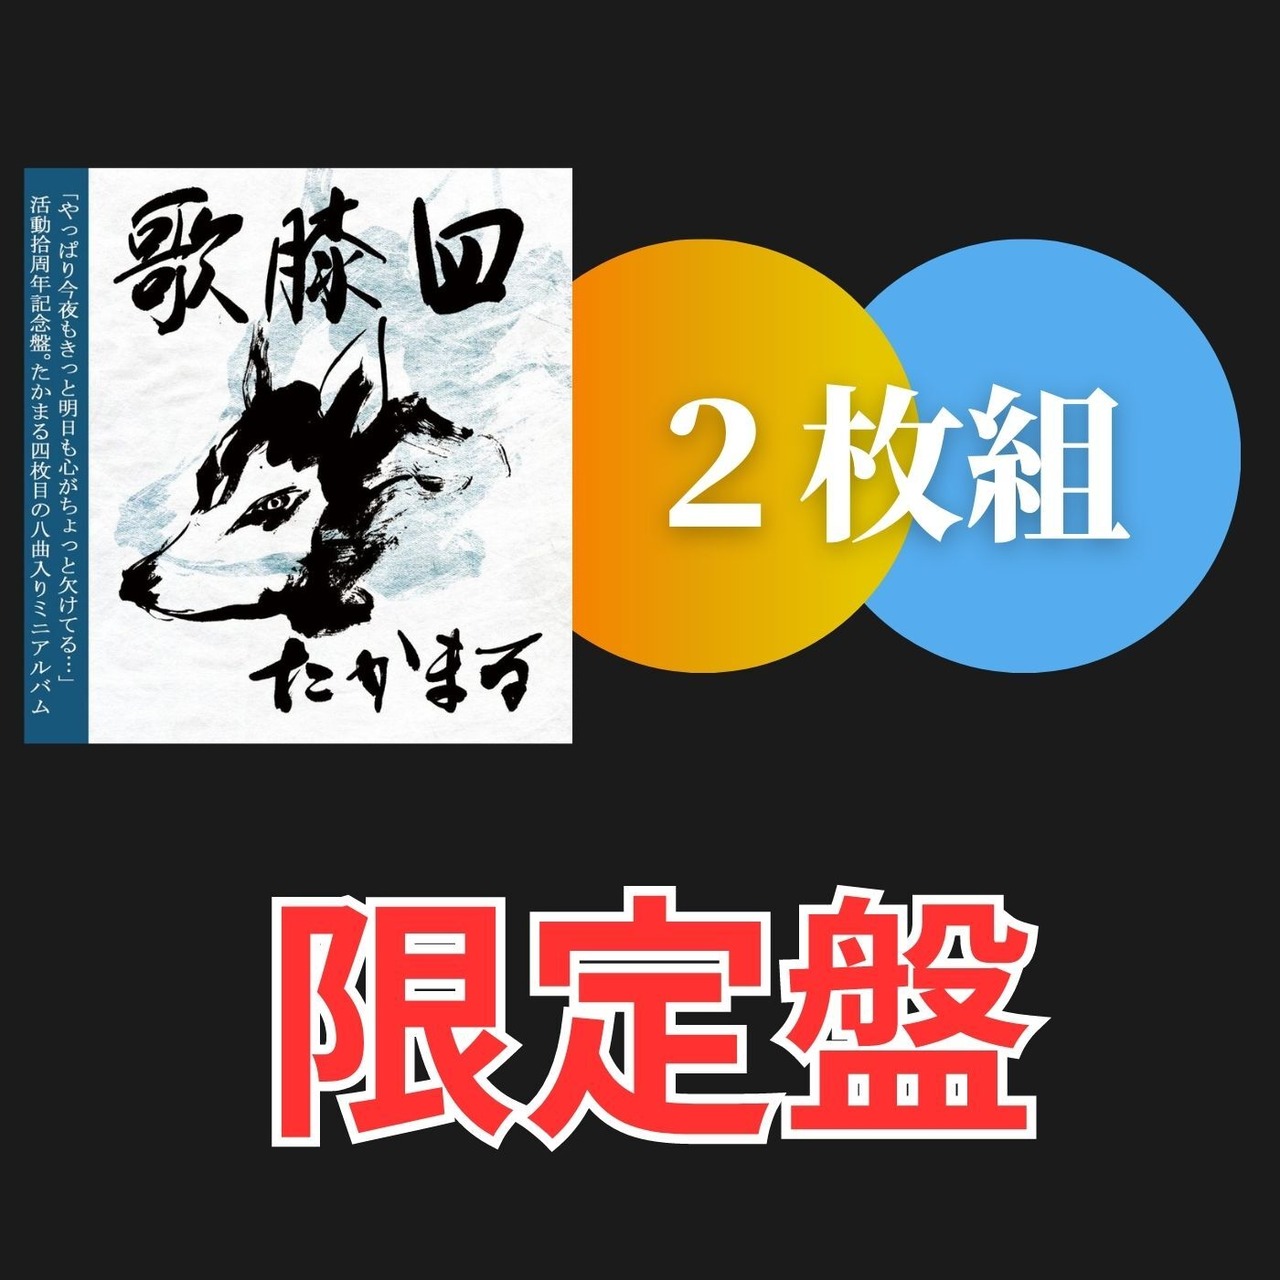 【先行販売限定版】4th ミニアルバム 歌膝 utahiza 四（二枚組）